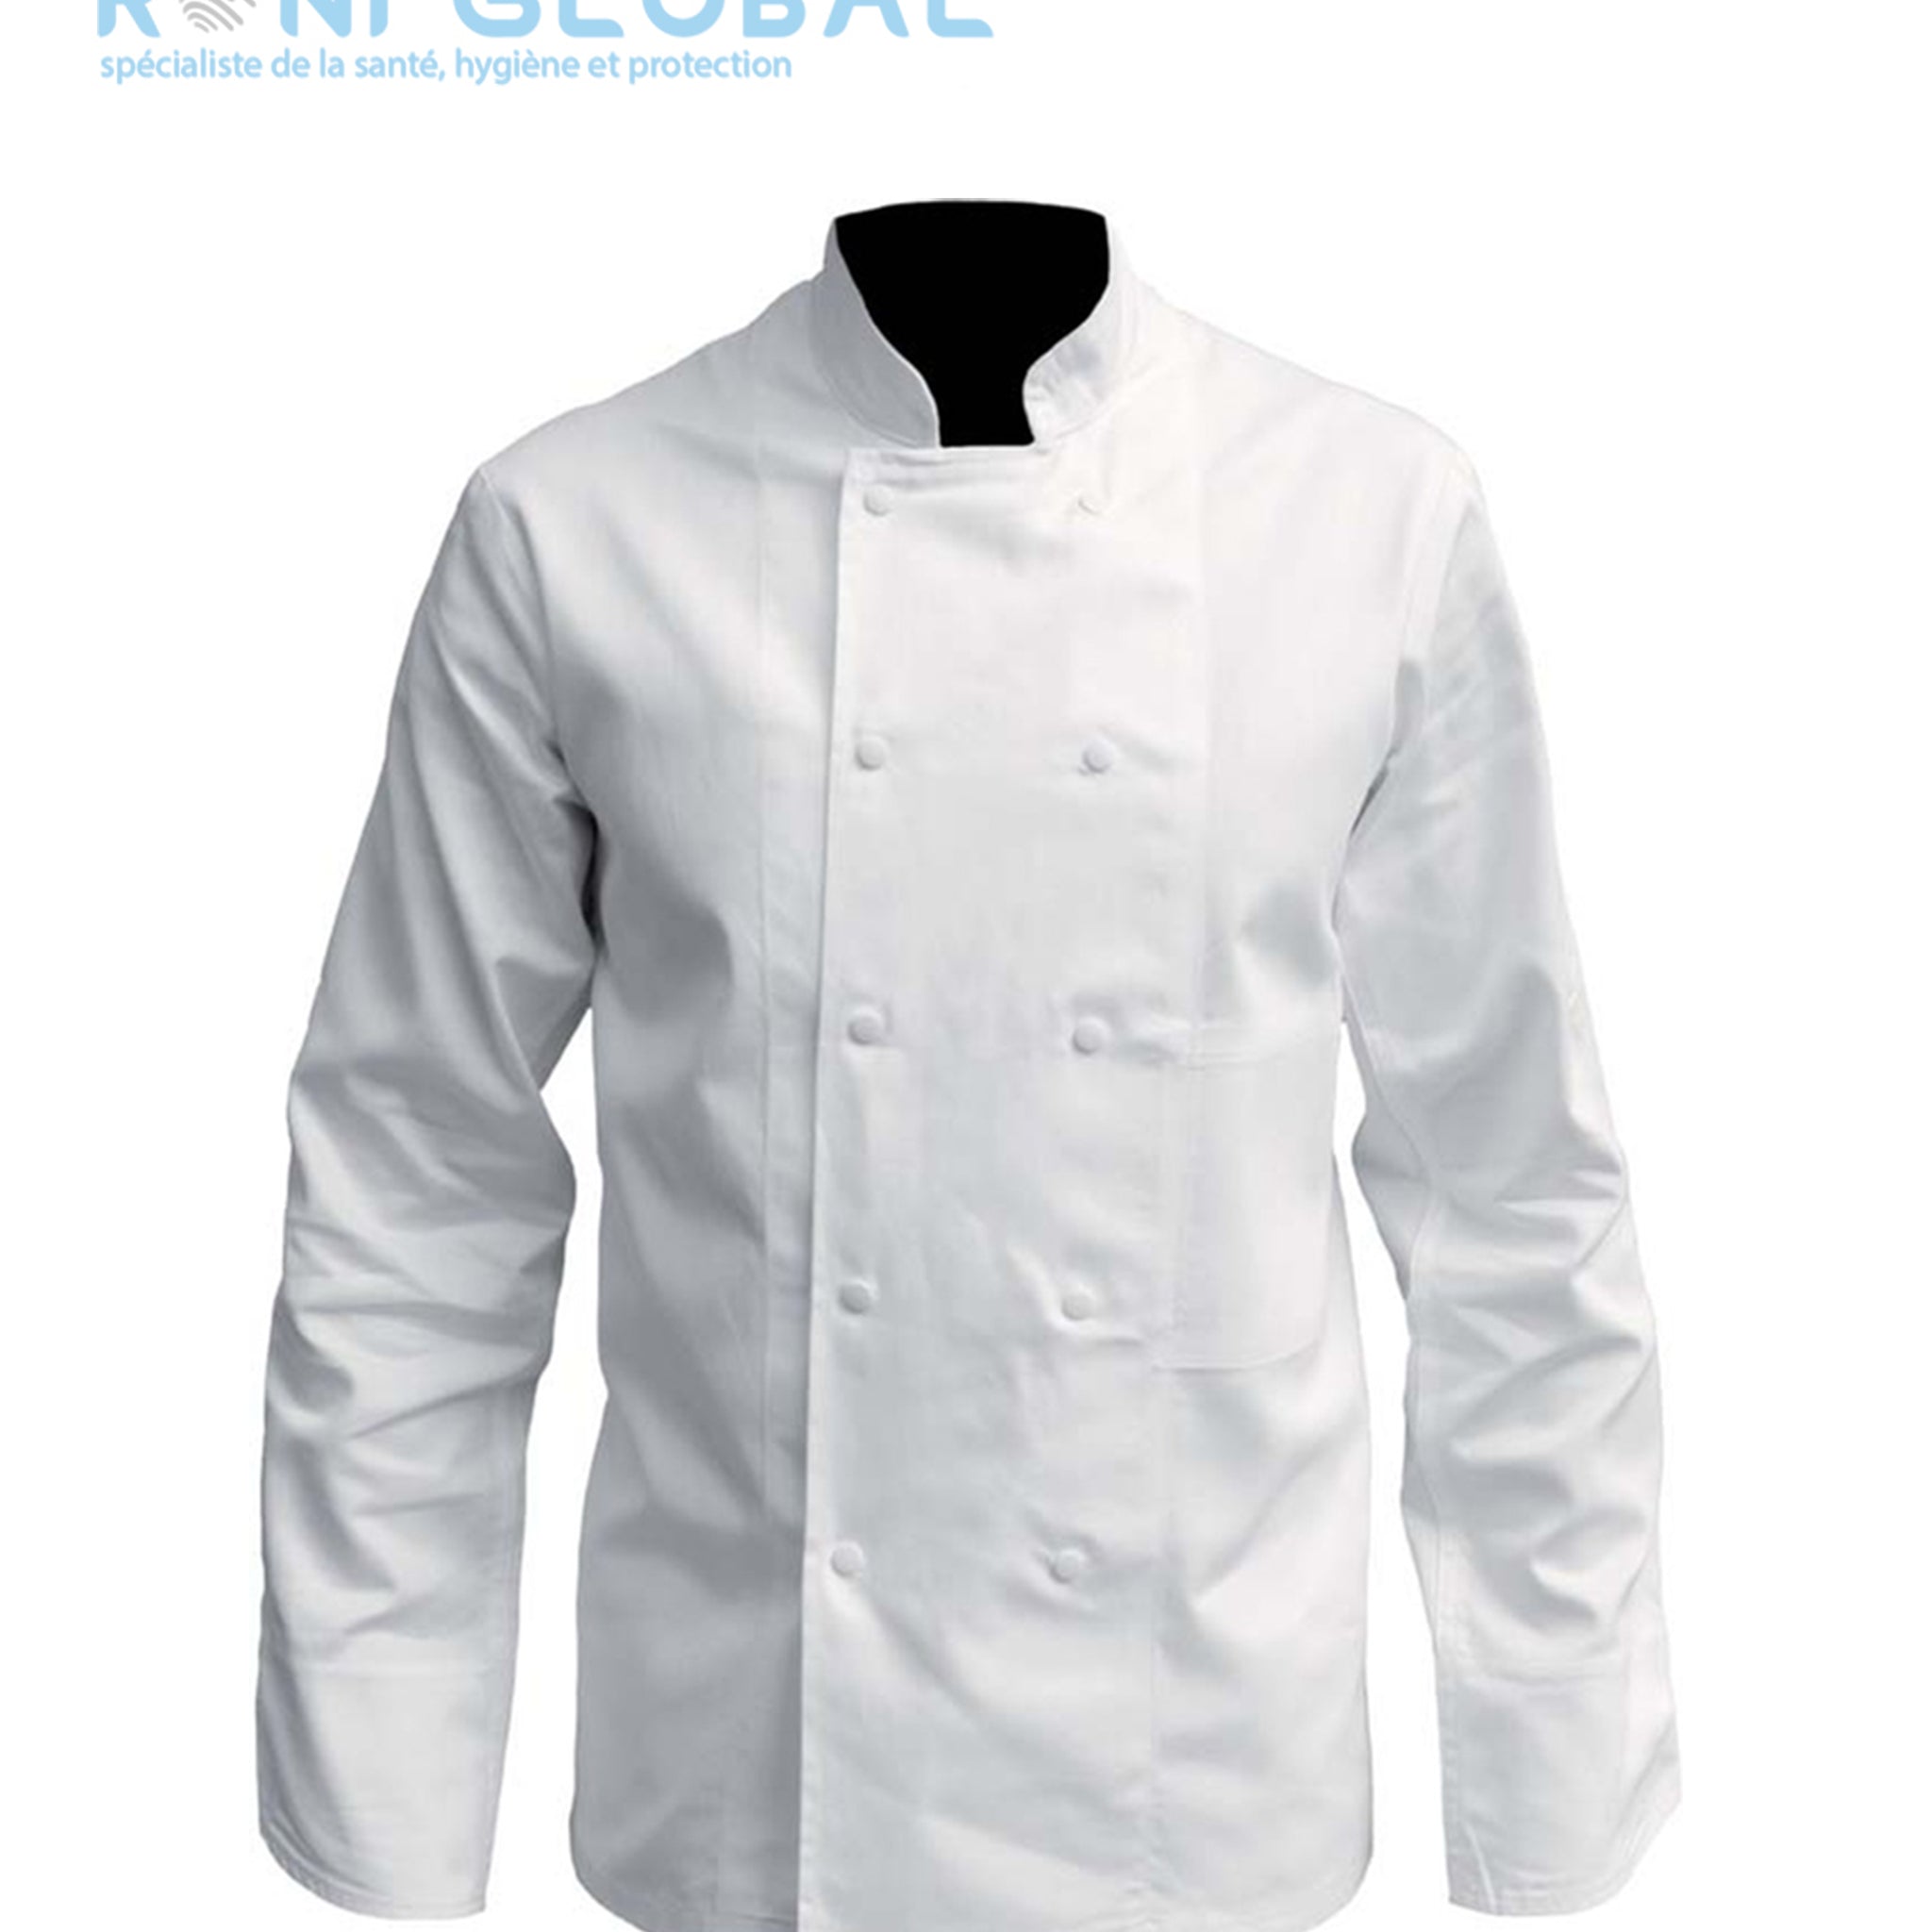 Veste de cuisine blanche manches longues, pressions calottées, en coton 2 poches - VESTE DE CUISINE COTON BLANC PRESSIONS PBV